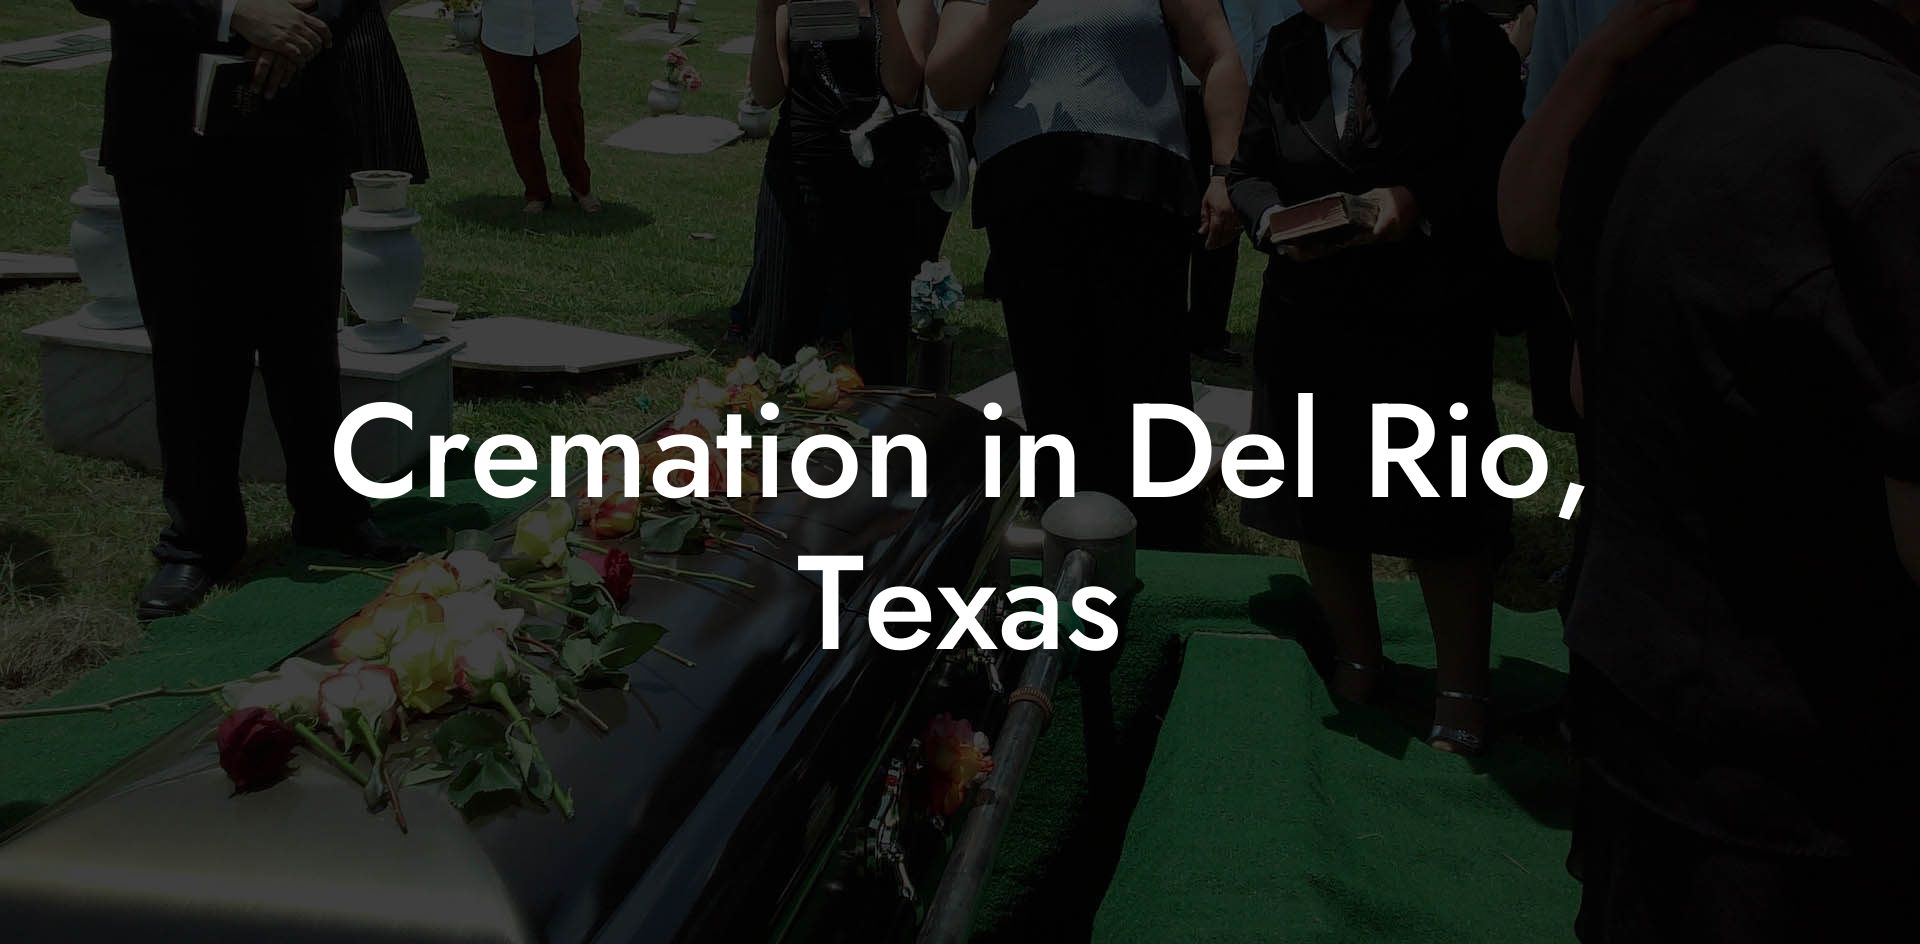 Cremation in Del Rio, Texas